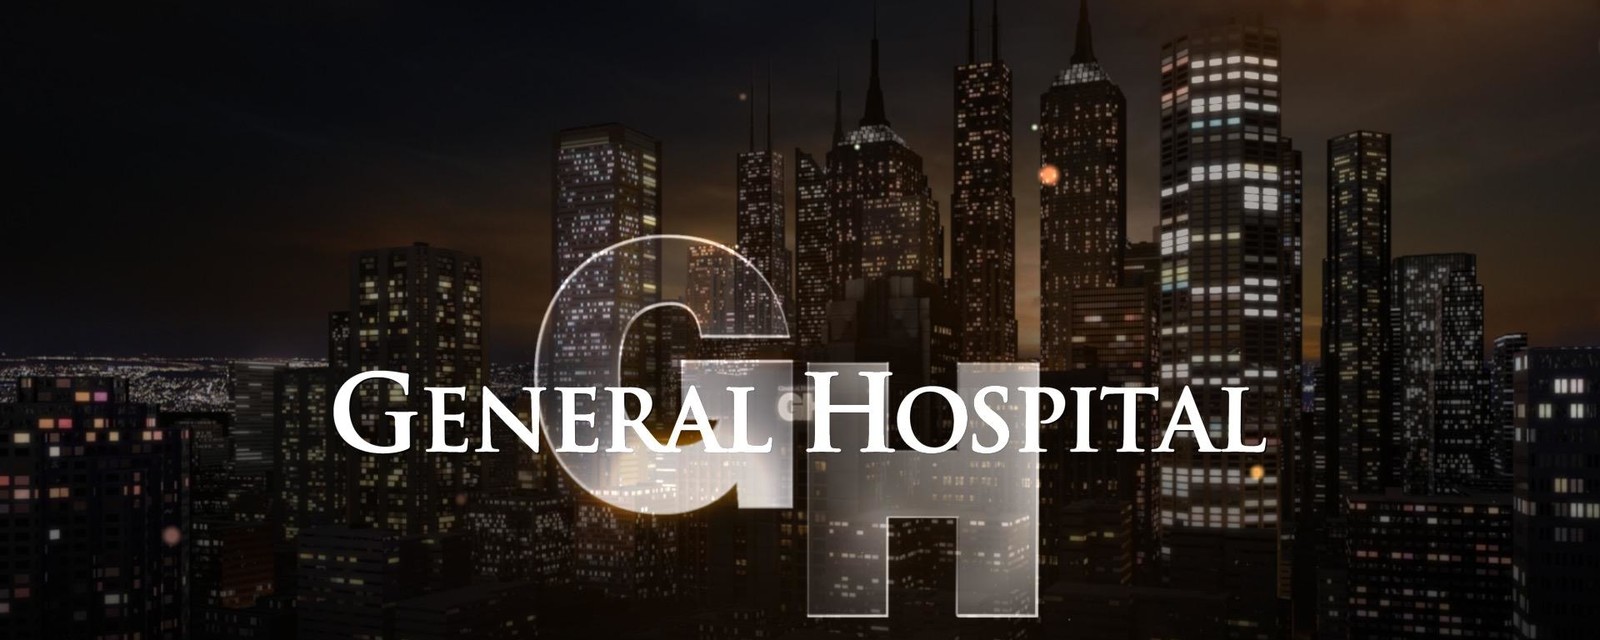 General Hospital Wins Big at 2019 Daytime Emmys | General Hospital